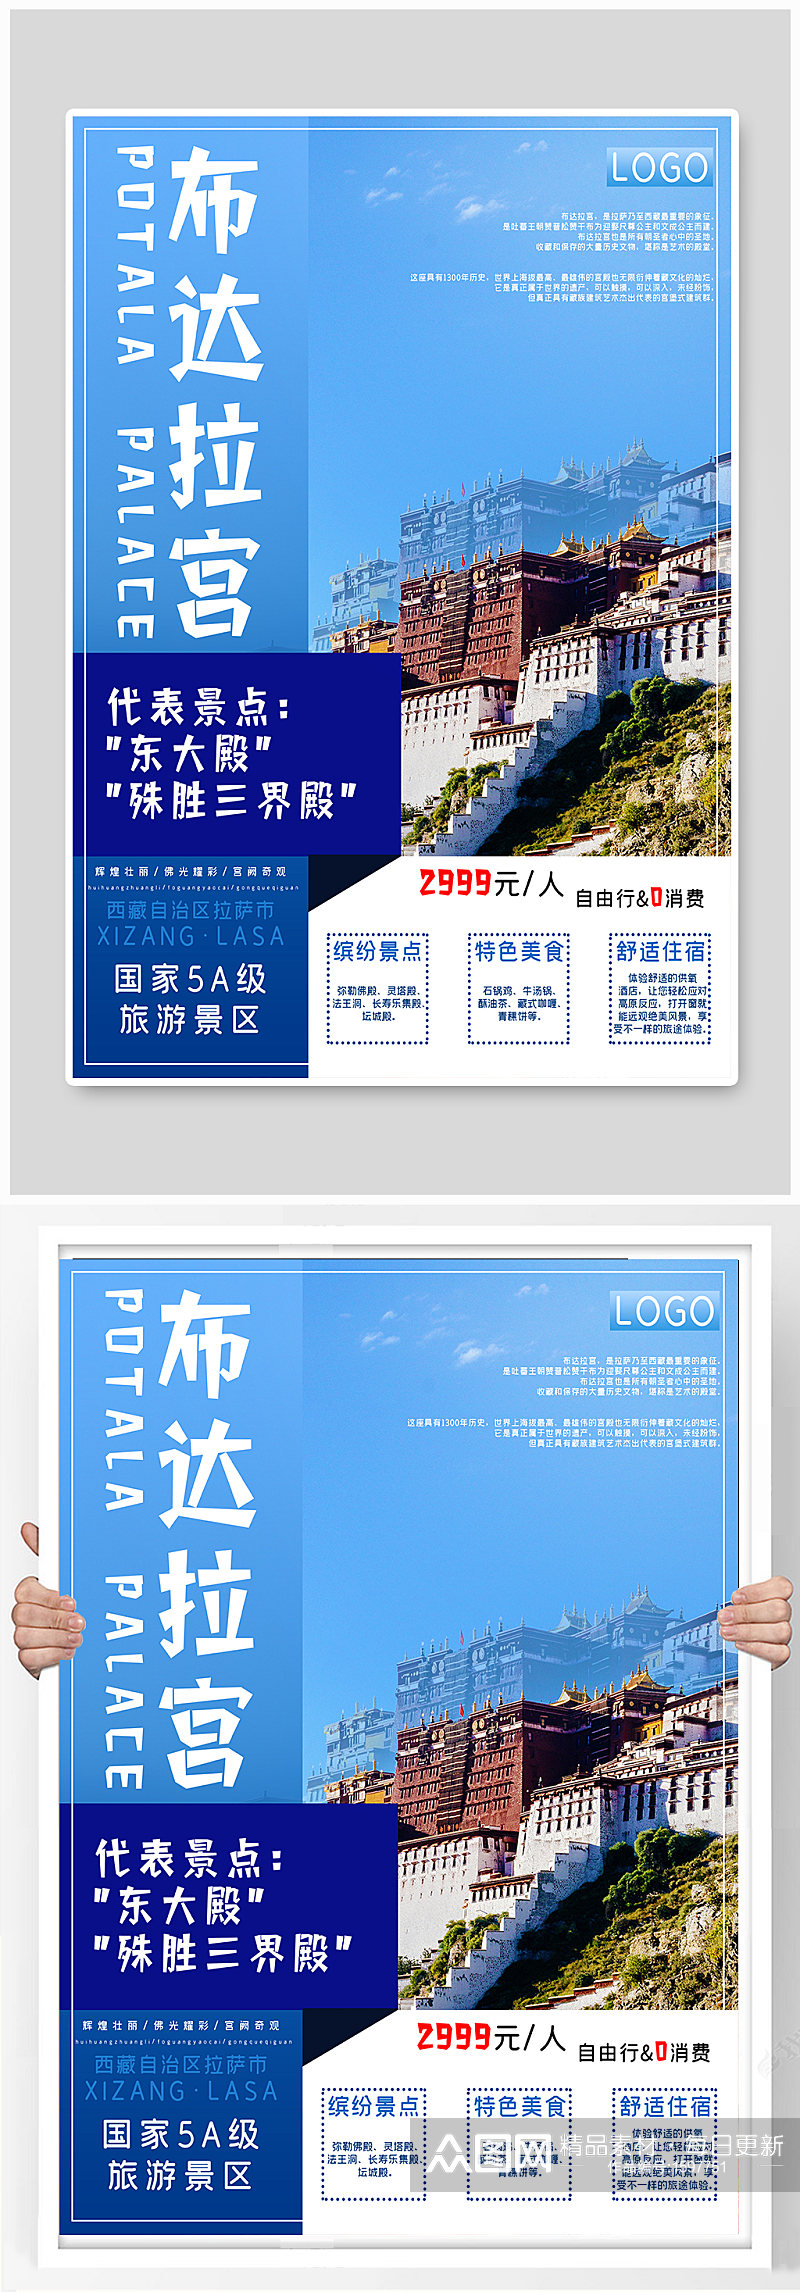 西藏之拉萨布达拉宫旅游海报素材